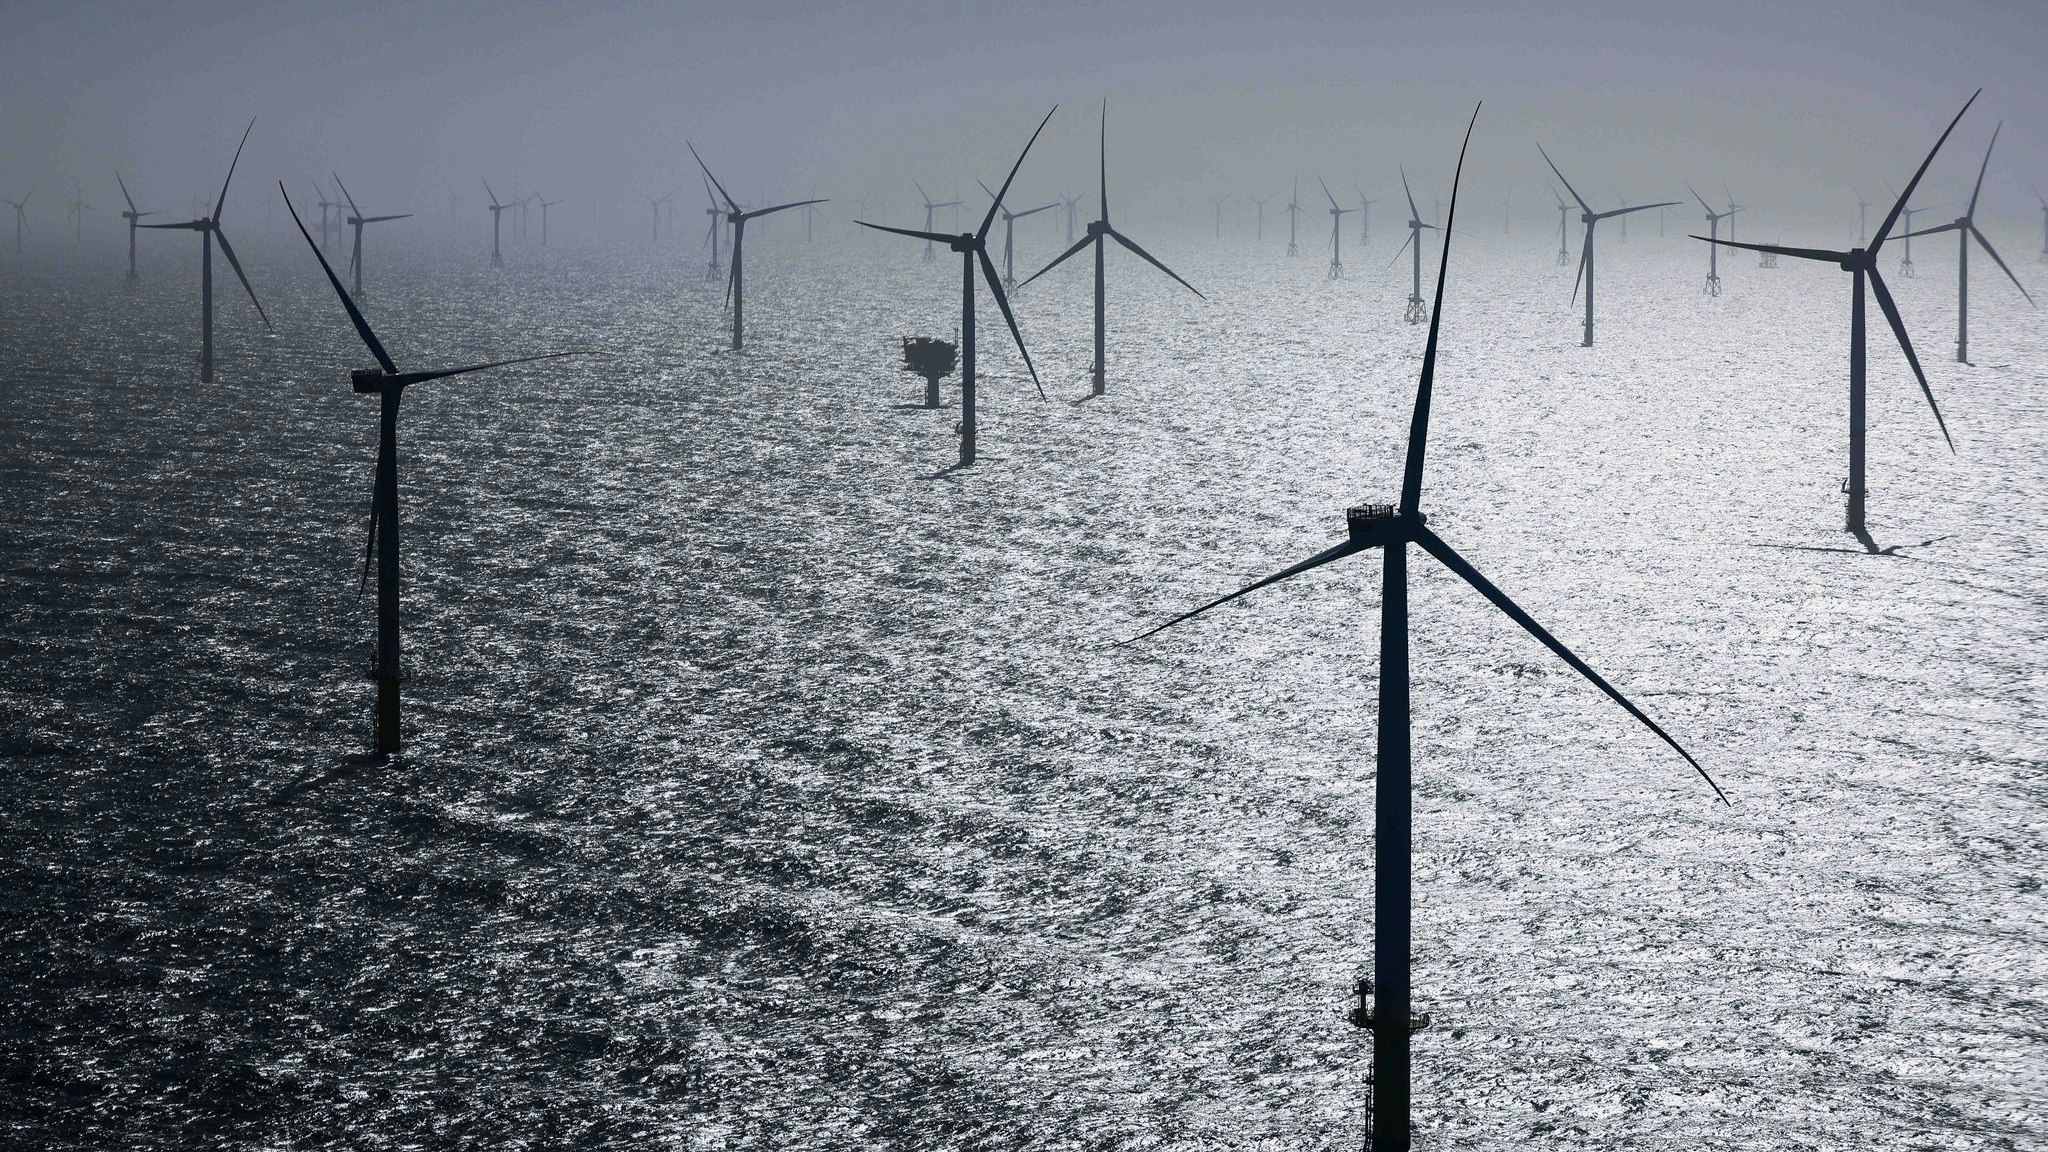 Zahlreiche Windräder, davon einige des neuen RWE-Offshore-Windparks. Foto: dpa/Charisius